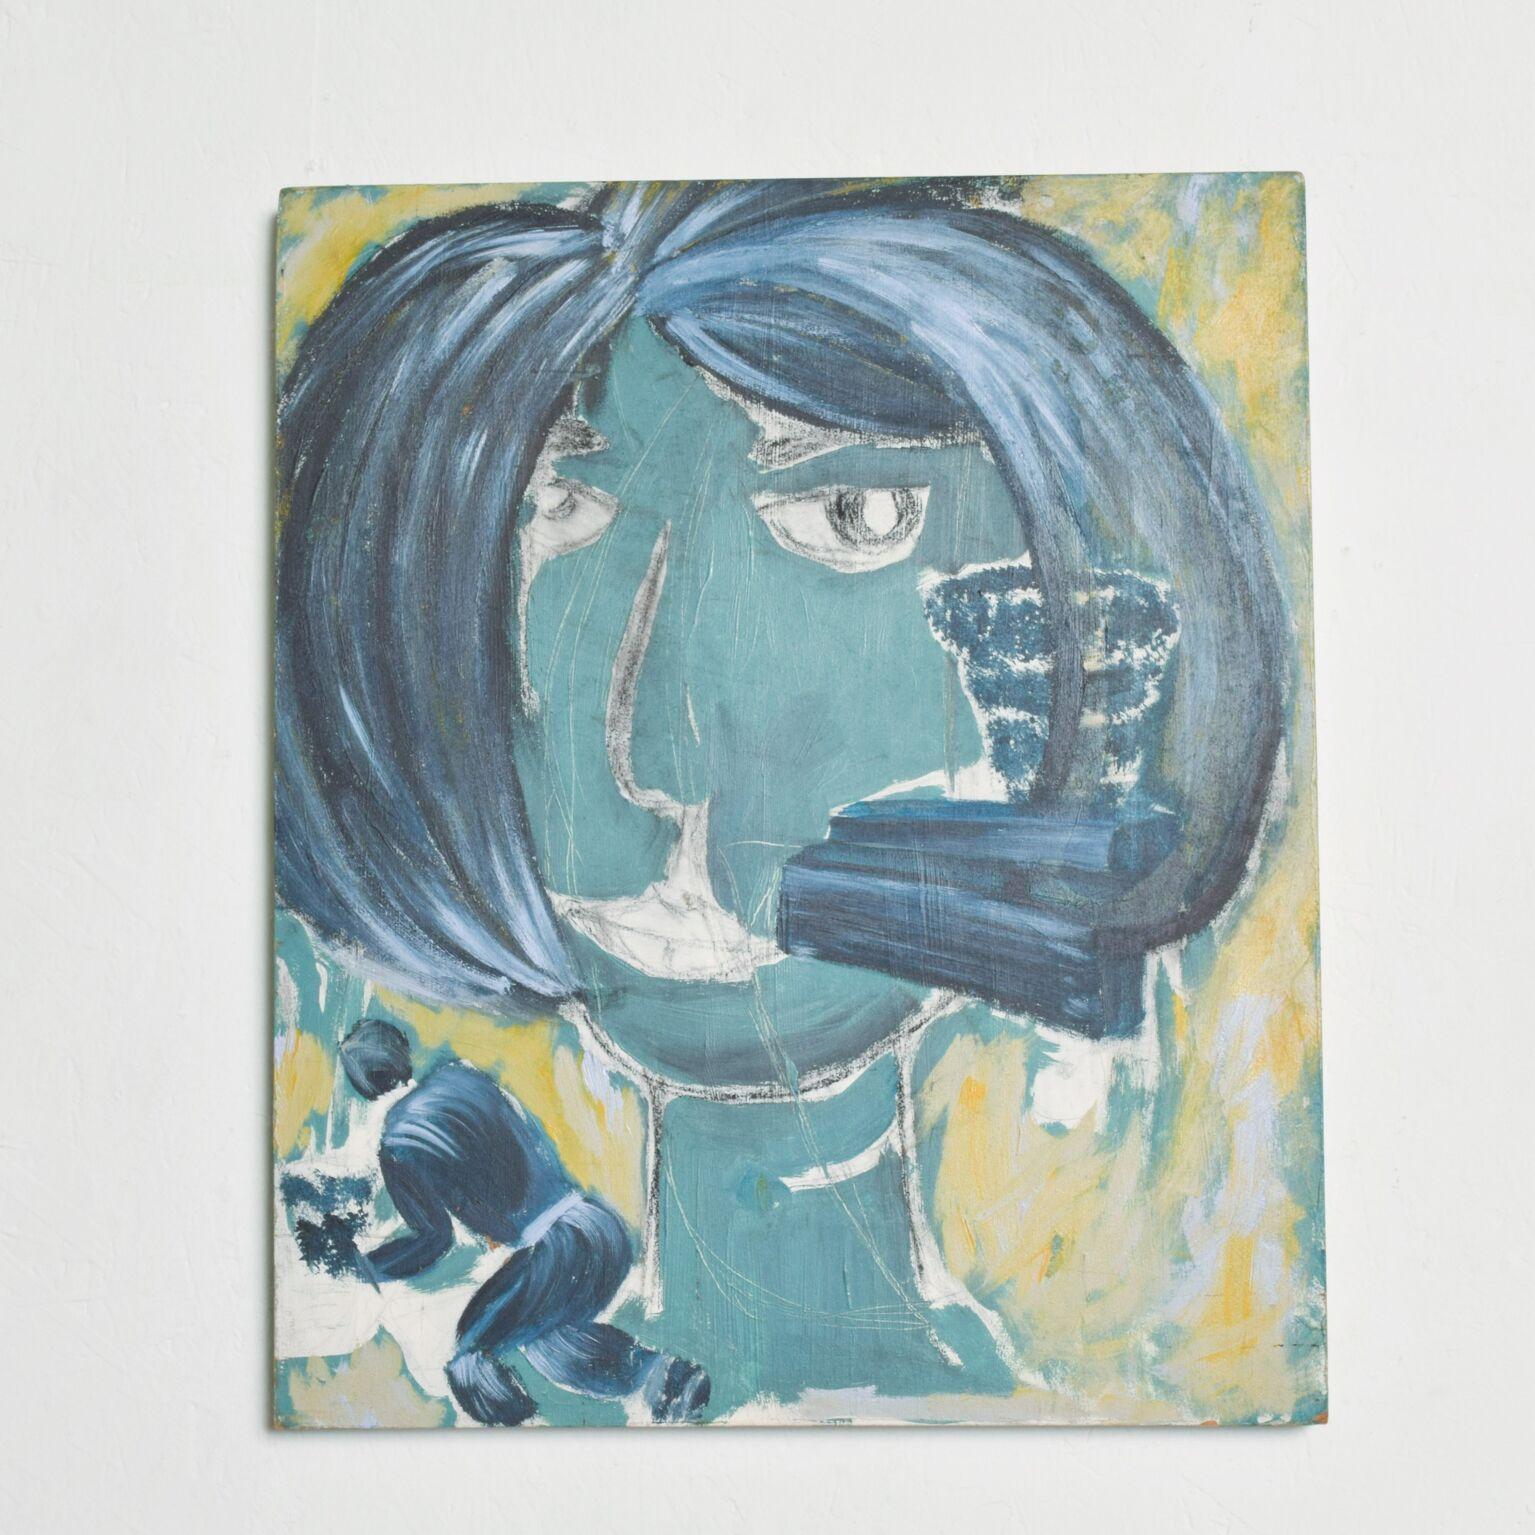 AMBIANIC präsentiert
Kunstwerk von Pablo Romo mit weiblichem Thema
blaue Acrylmalerei auf Holz.
19,75 x 23,75x 1,5D
Originaler sehr guter Vintage-Zustand.
Bitte beachten Sie die vorhandenen Bilder.